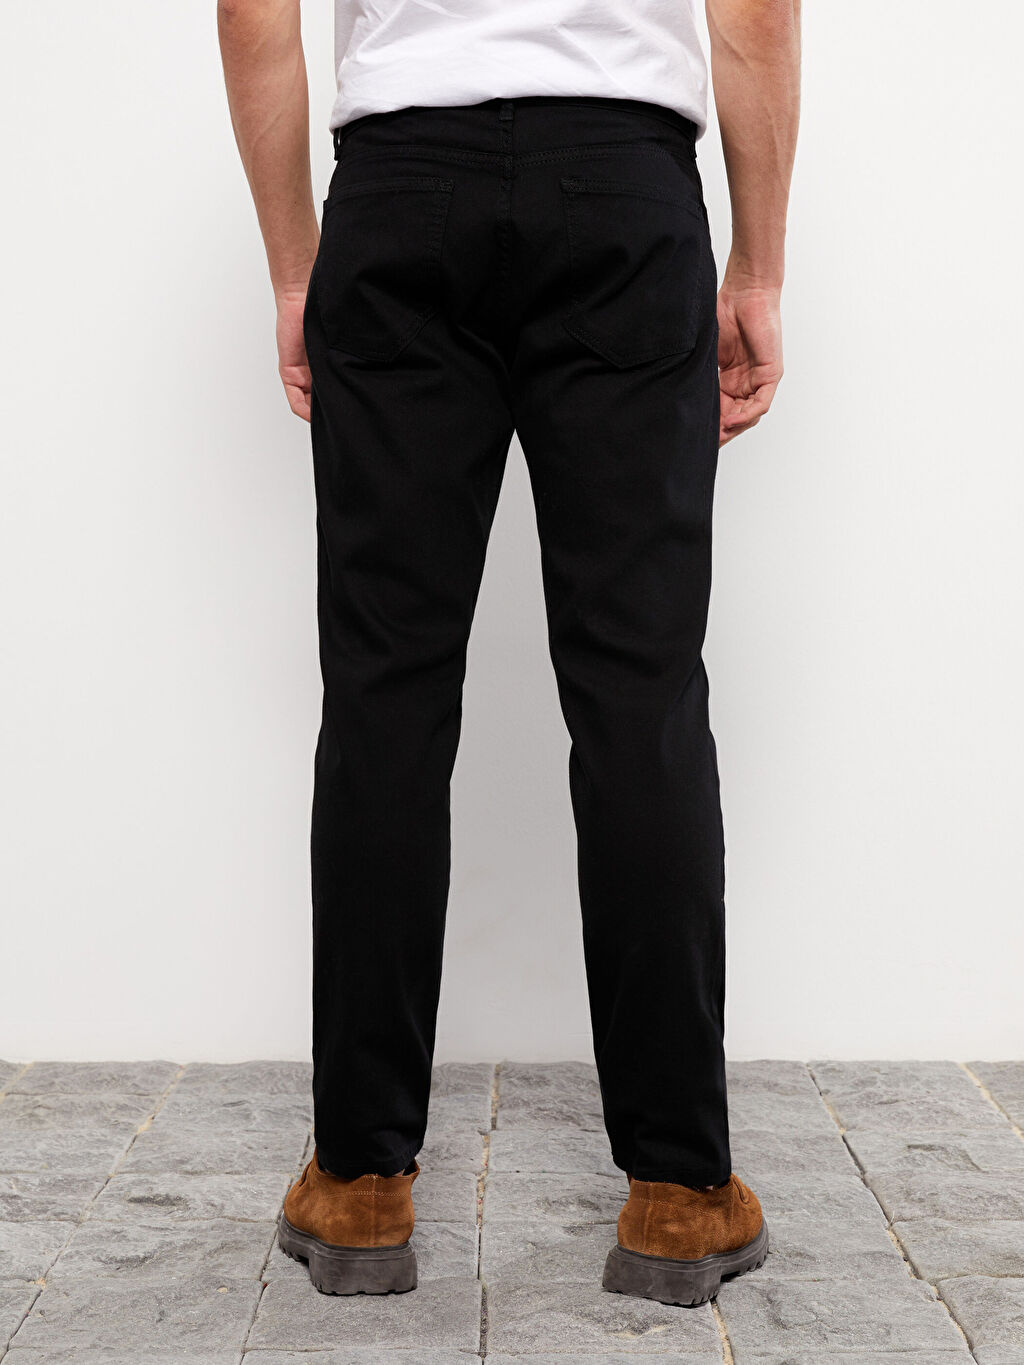 Мужские брюки Slim Fit из габардина LCW Casual – купить из-за границы черезсервис «CDEK.Shopping»